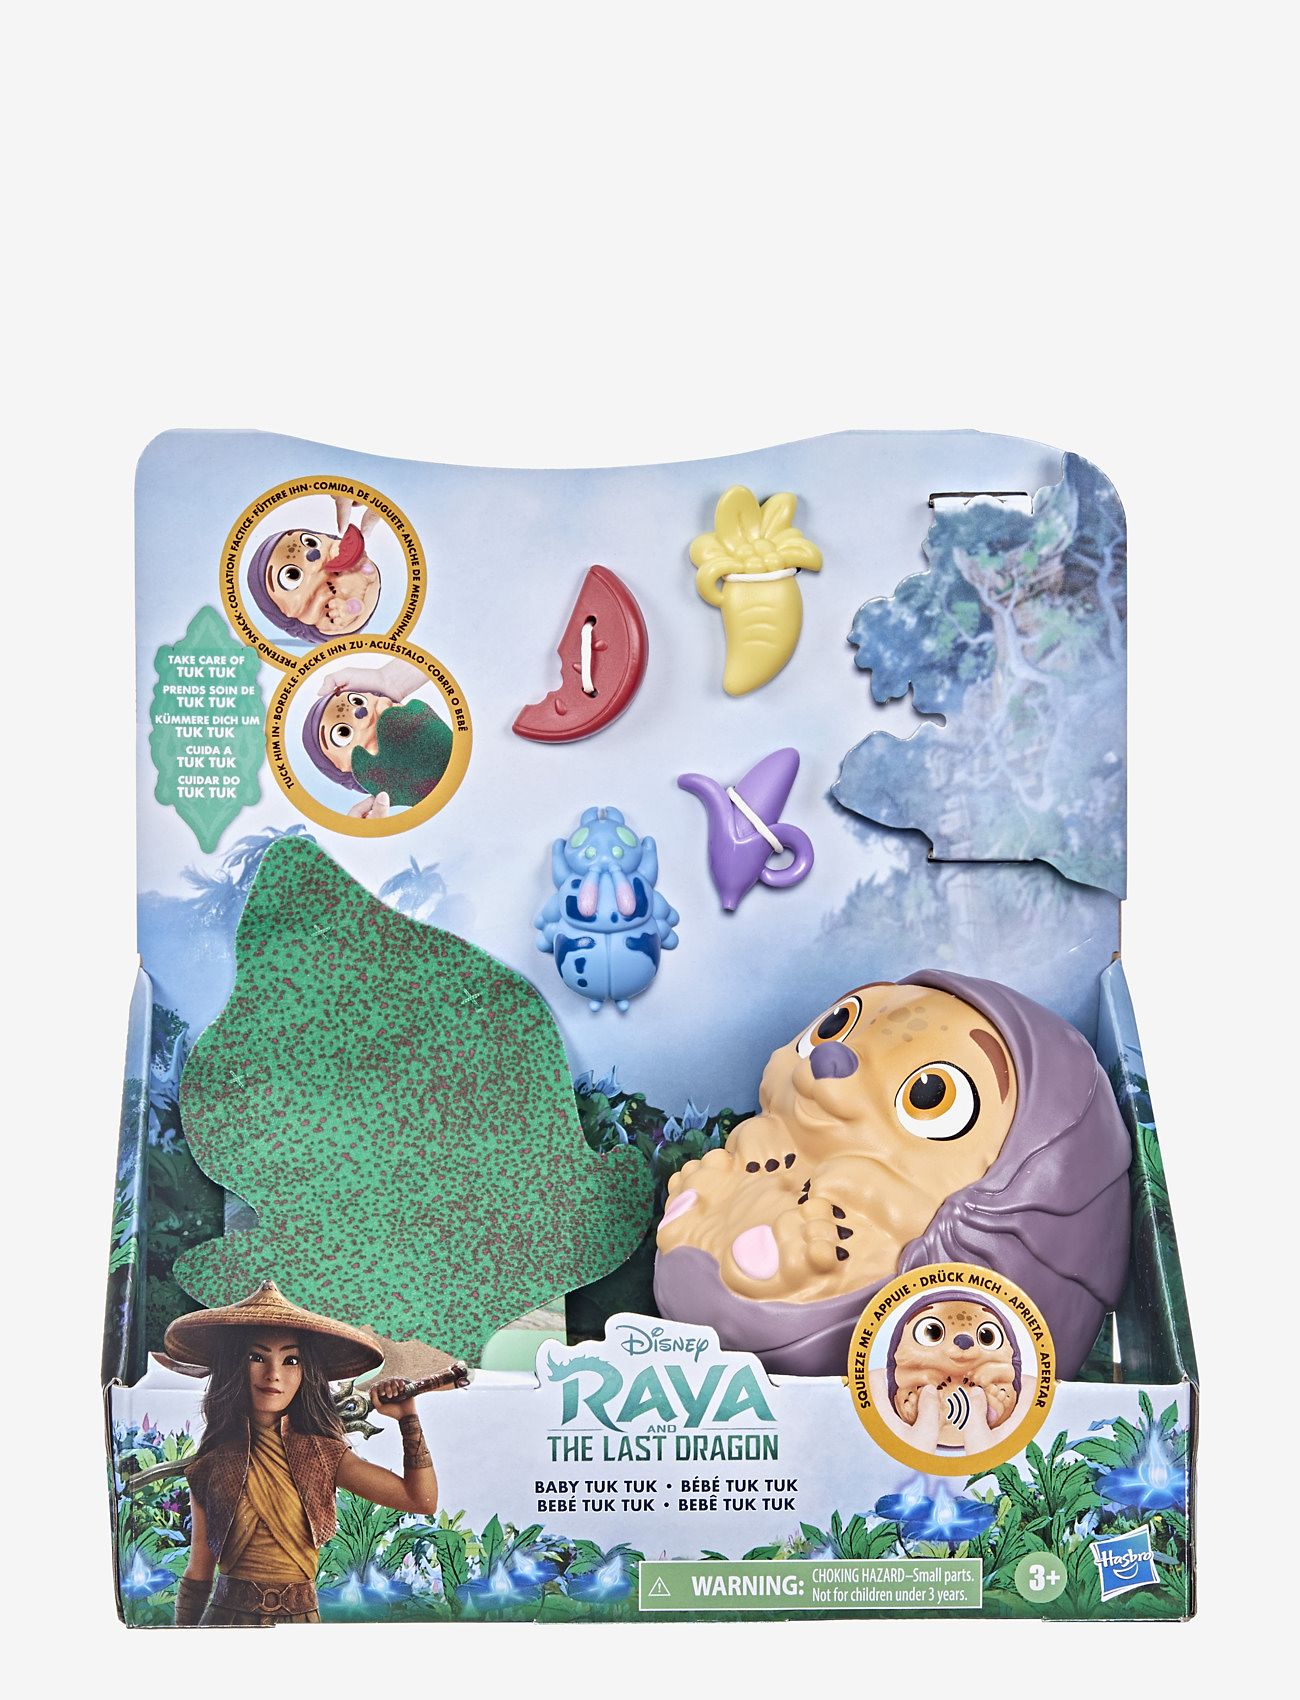 Disney Princess - Disney's Raya and the Last Dragon Baby Tuk Tuk - karakterer fra filmer og eventyr - multi-color - 1